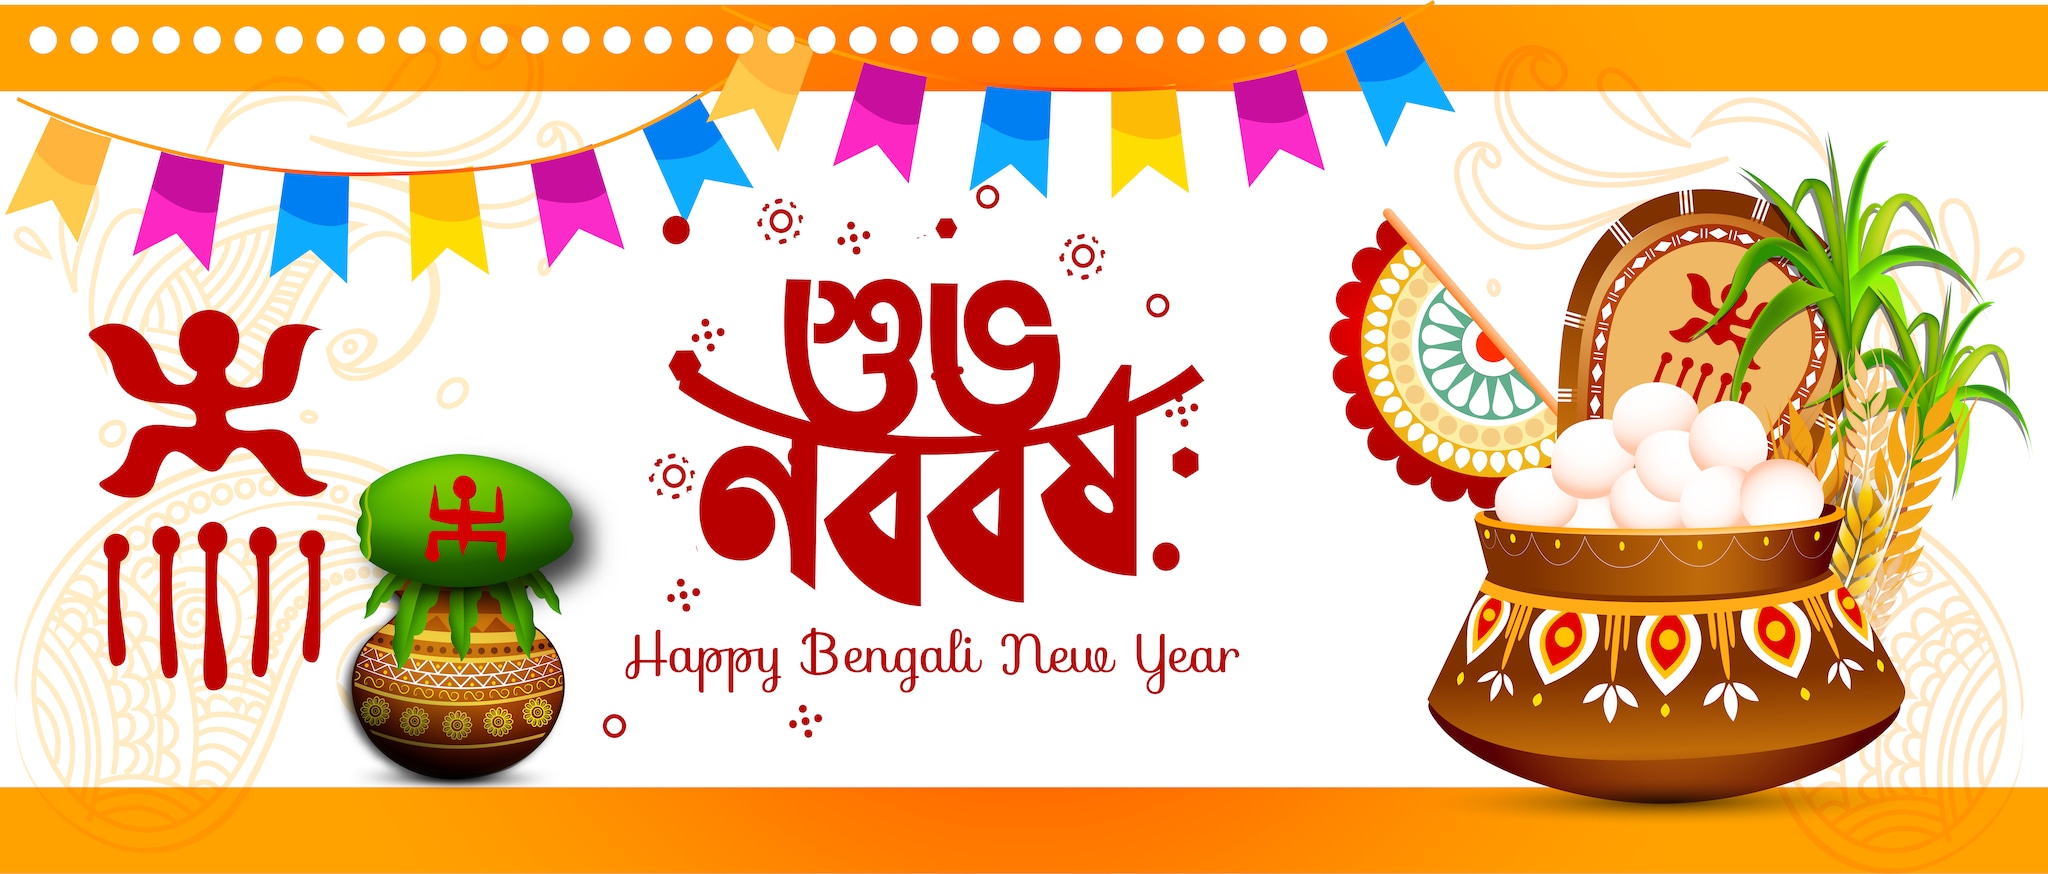 bengali new year essay